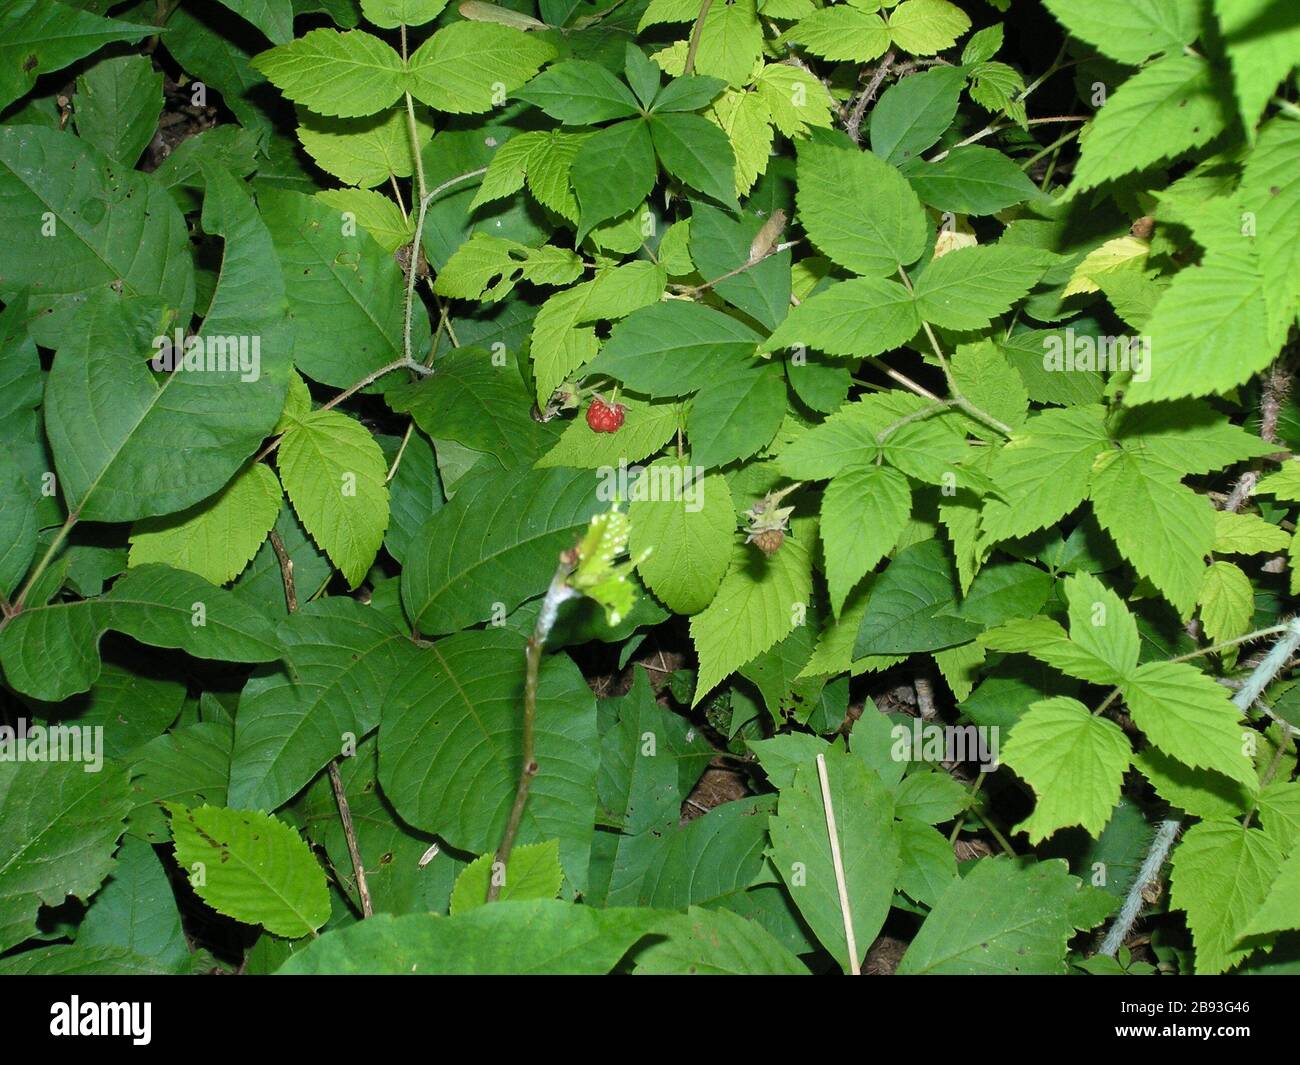 Ein Bild, das ich von wilden Himbeeren, Poison Ivy und Virginia Creeper.  Die leichteren grüne Blätter auf der rechten Seite sind wilde rote  Himbeere. Die dunkleren grünen Blättern auf der linken Seite